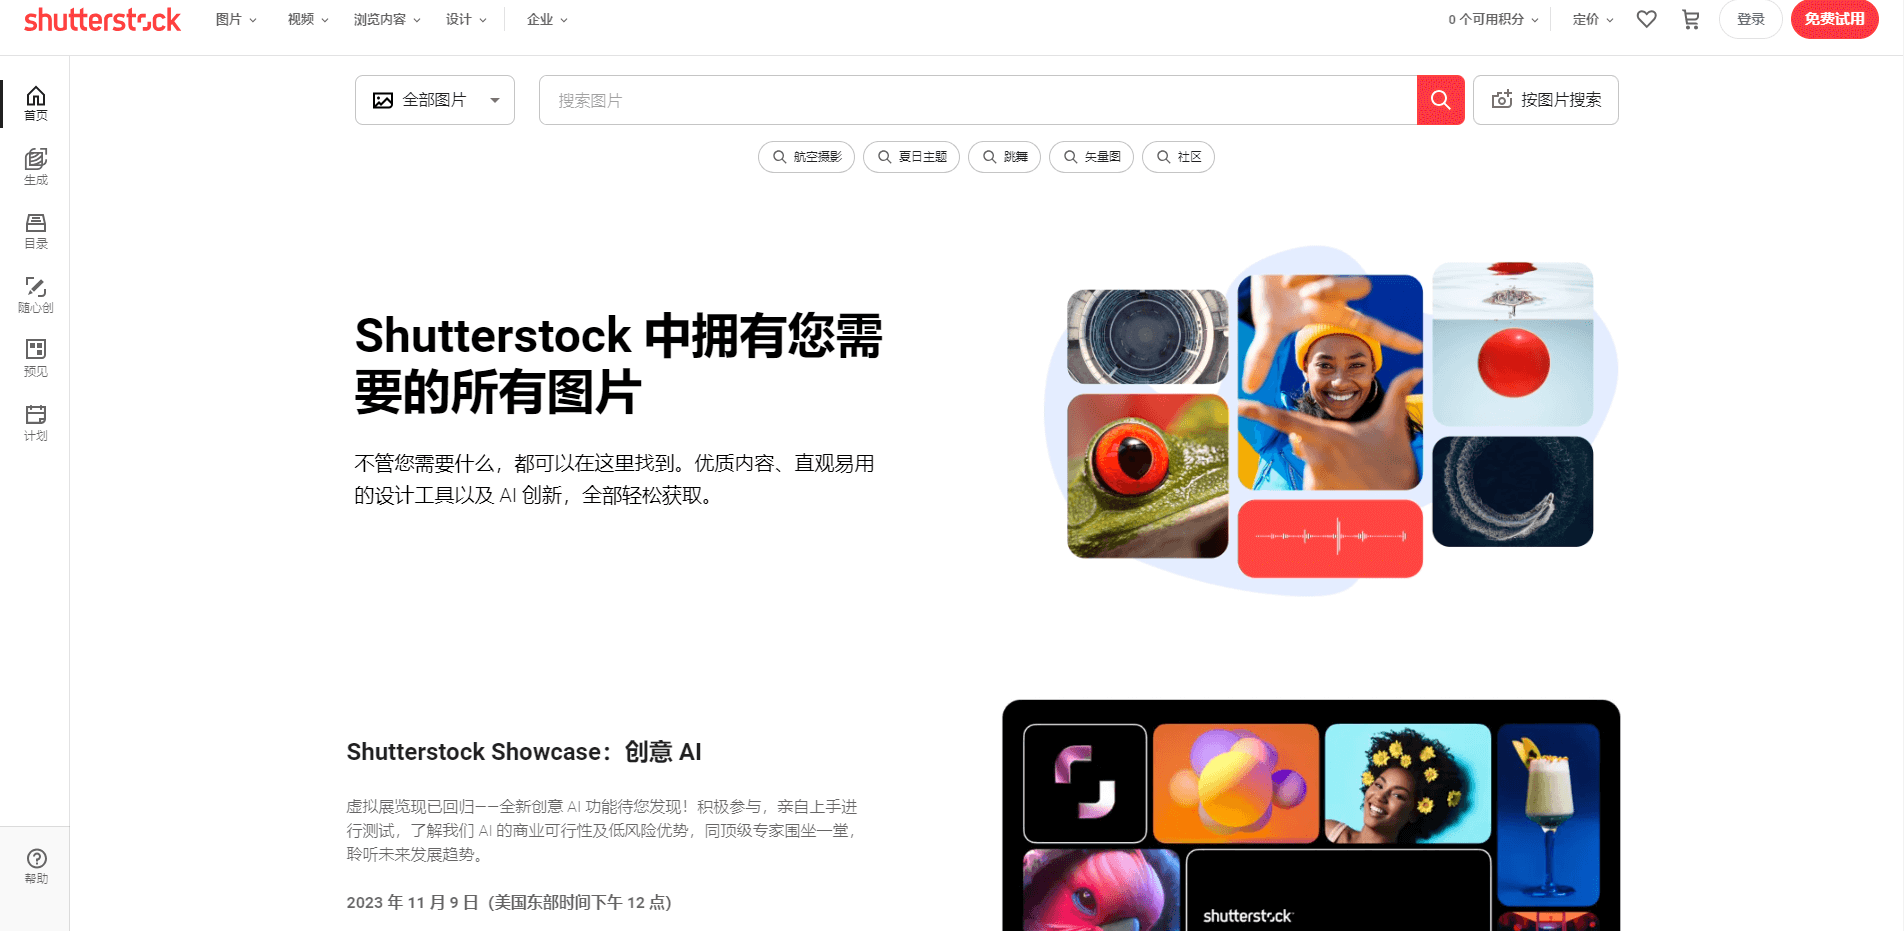 全球设计素材网站Shutterstock